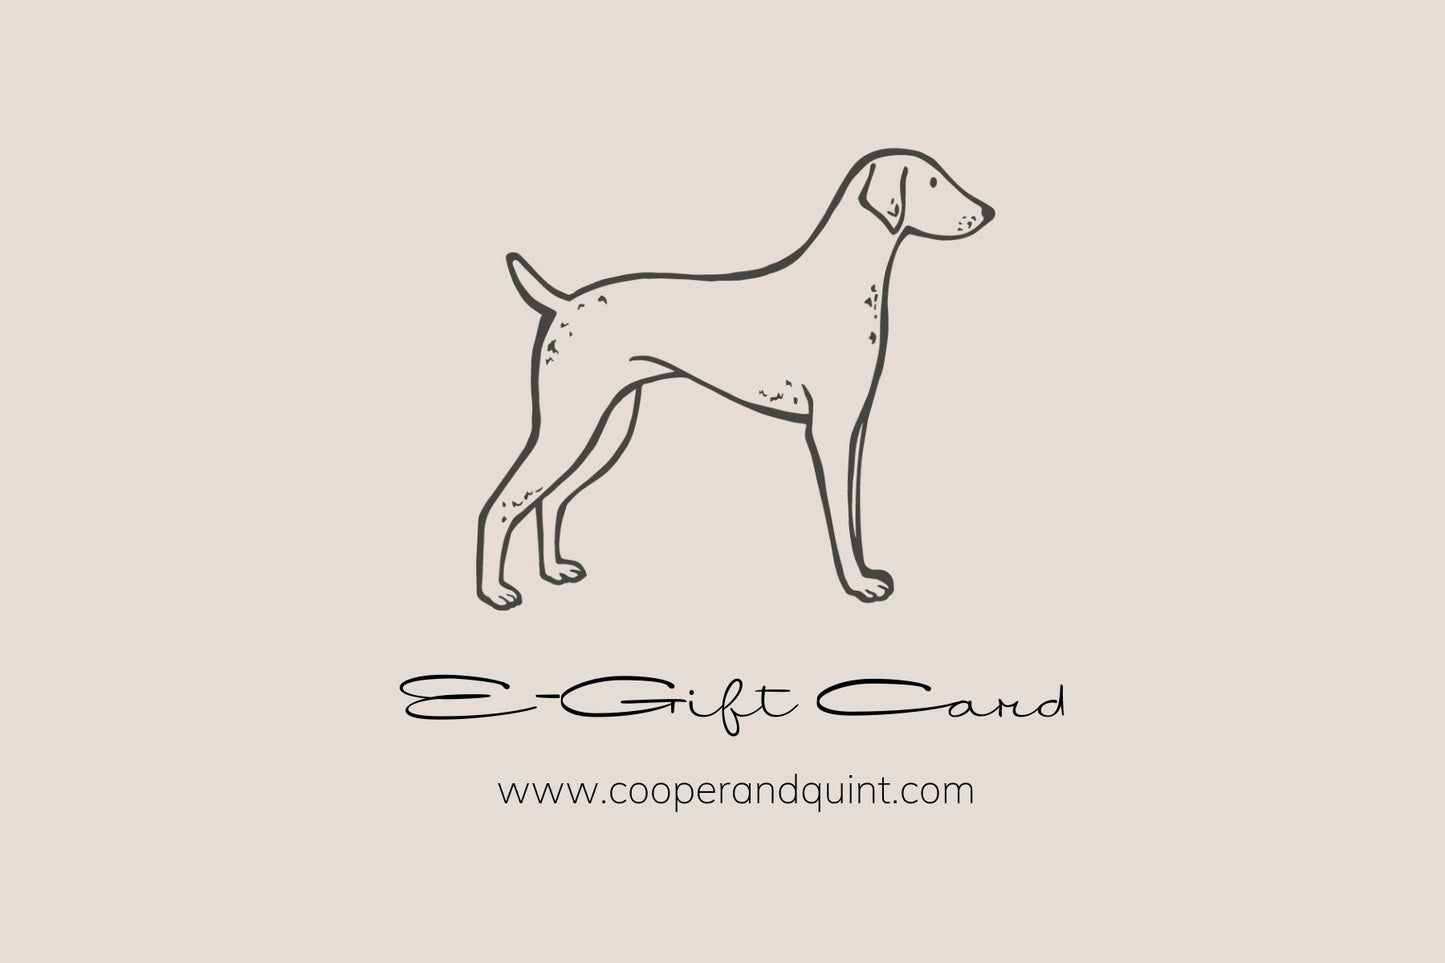 Cooper & Quint E-Cadeaukaart - Cooper & Quint